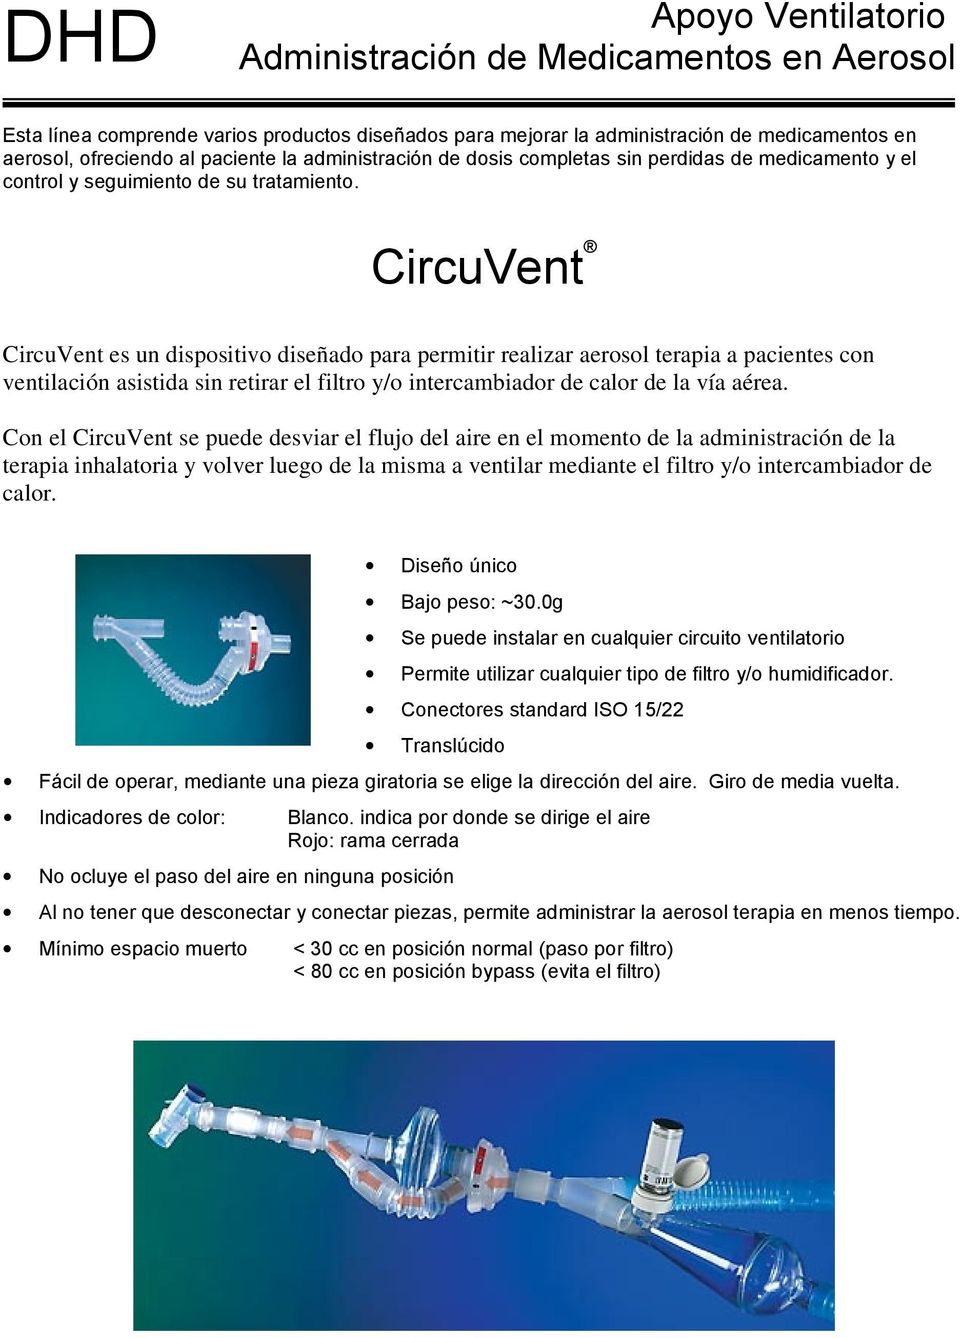 CircuVent CircuVent es un dispositivo diseñado para permitir realizar aerosol terapia a pacientes con ventilación asistida sin retirar el filtro y/o intercambiador de calor de la vía aérea.